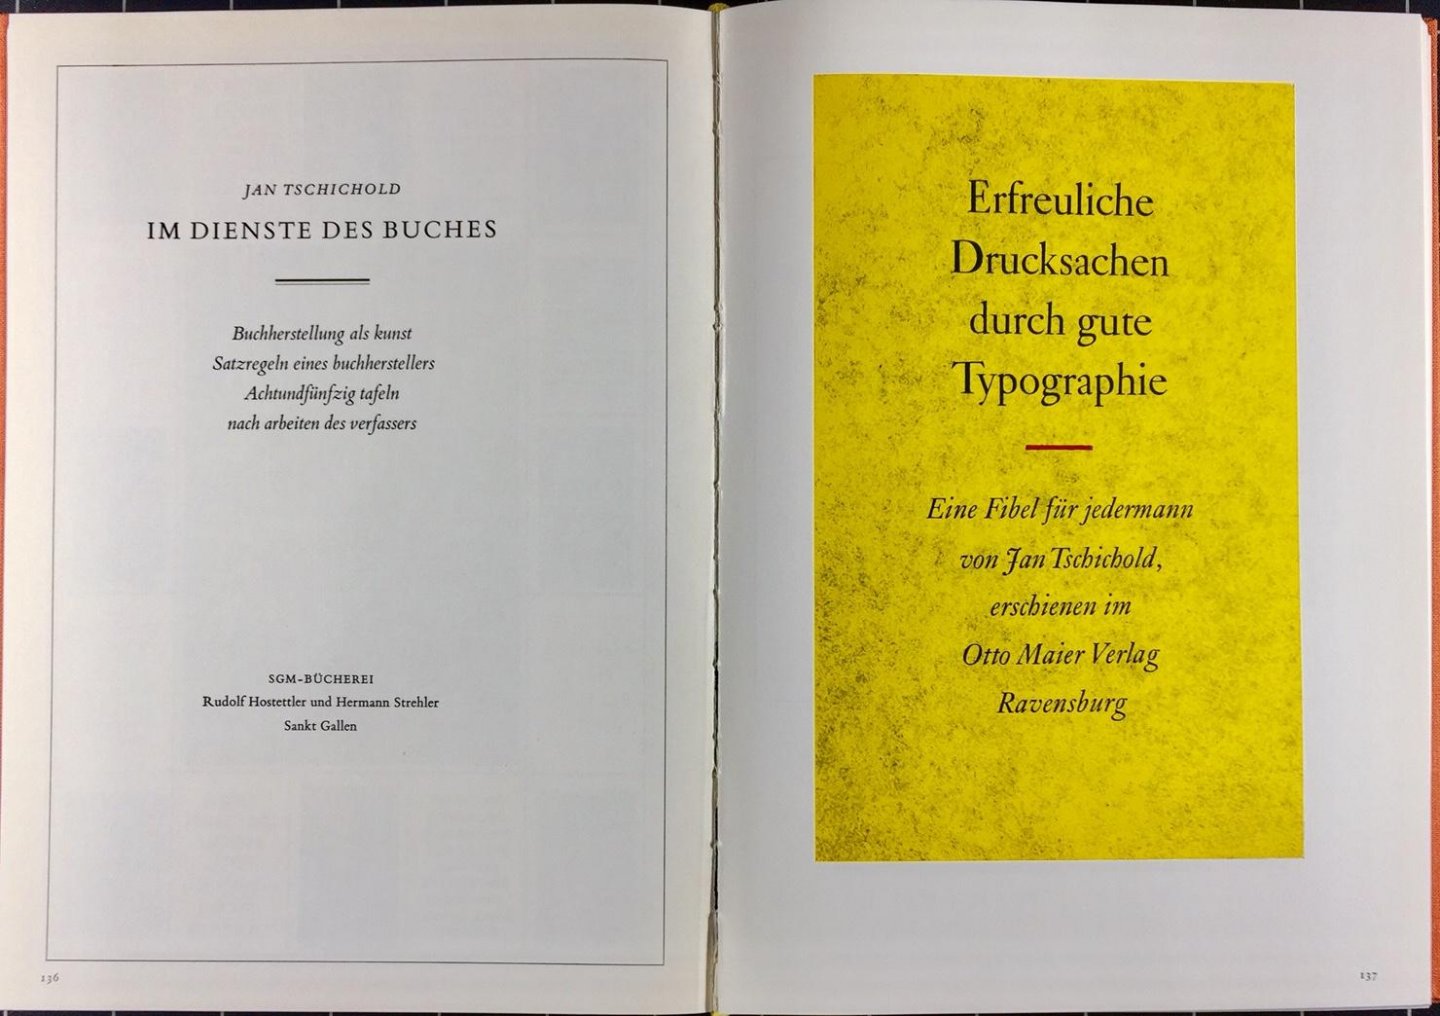 Werner Klemke - Leben und Werk des Typographen Jan Tschichold